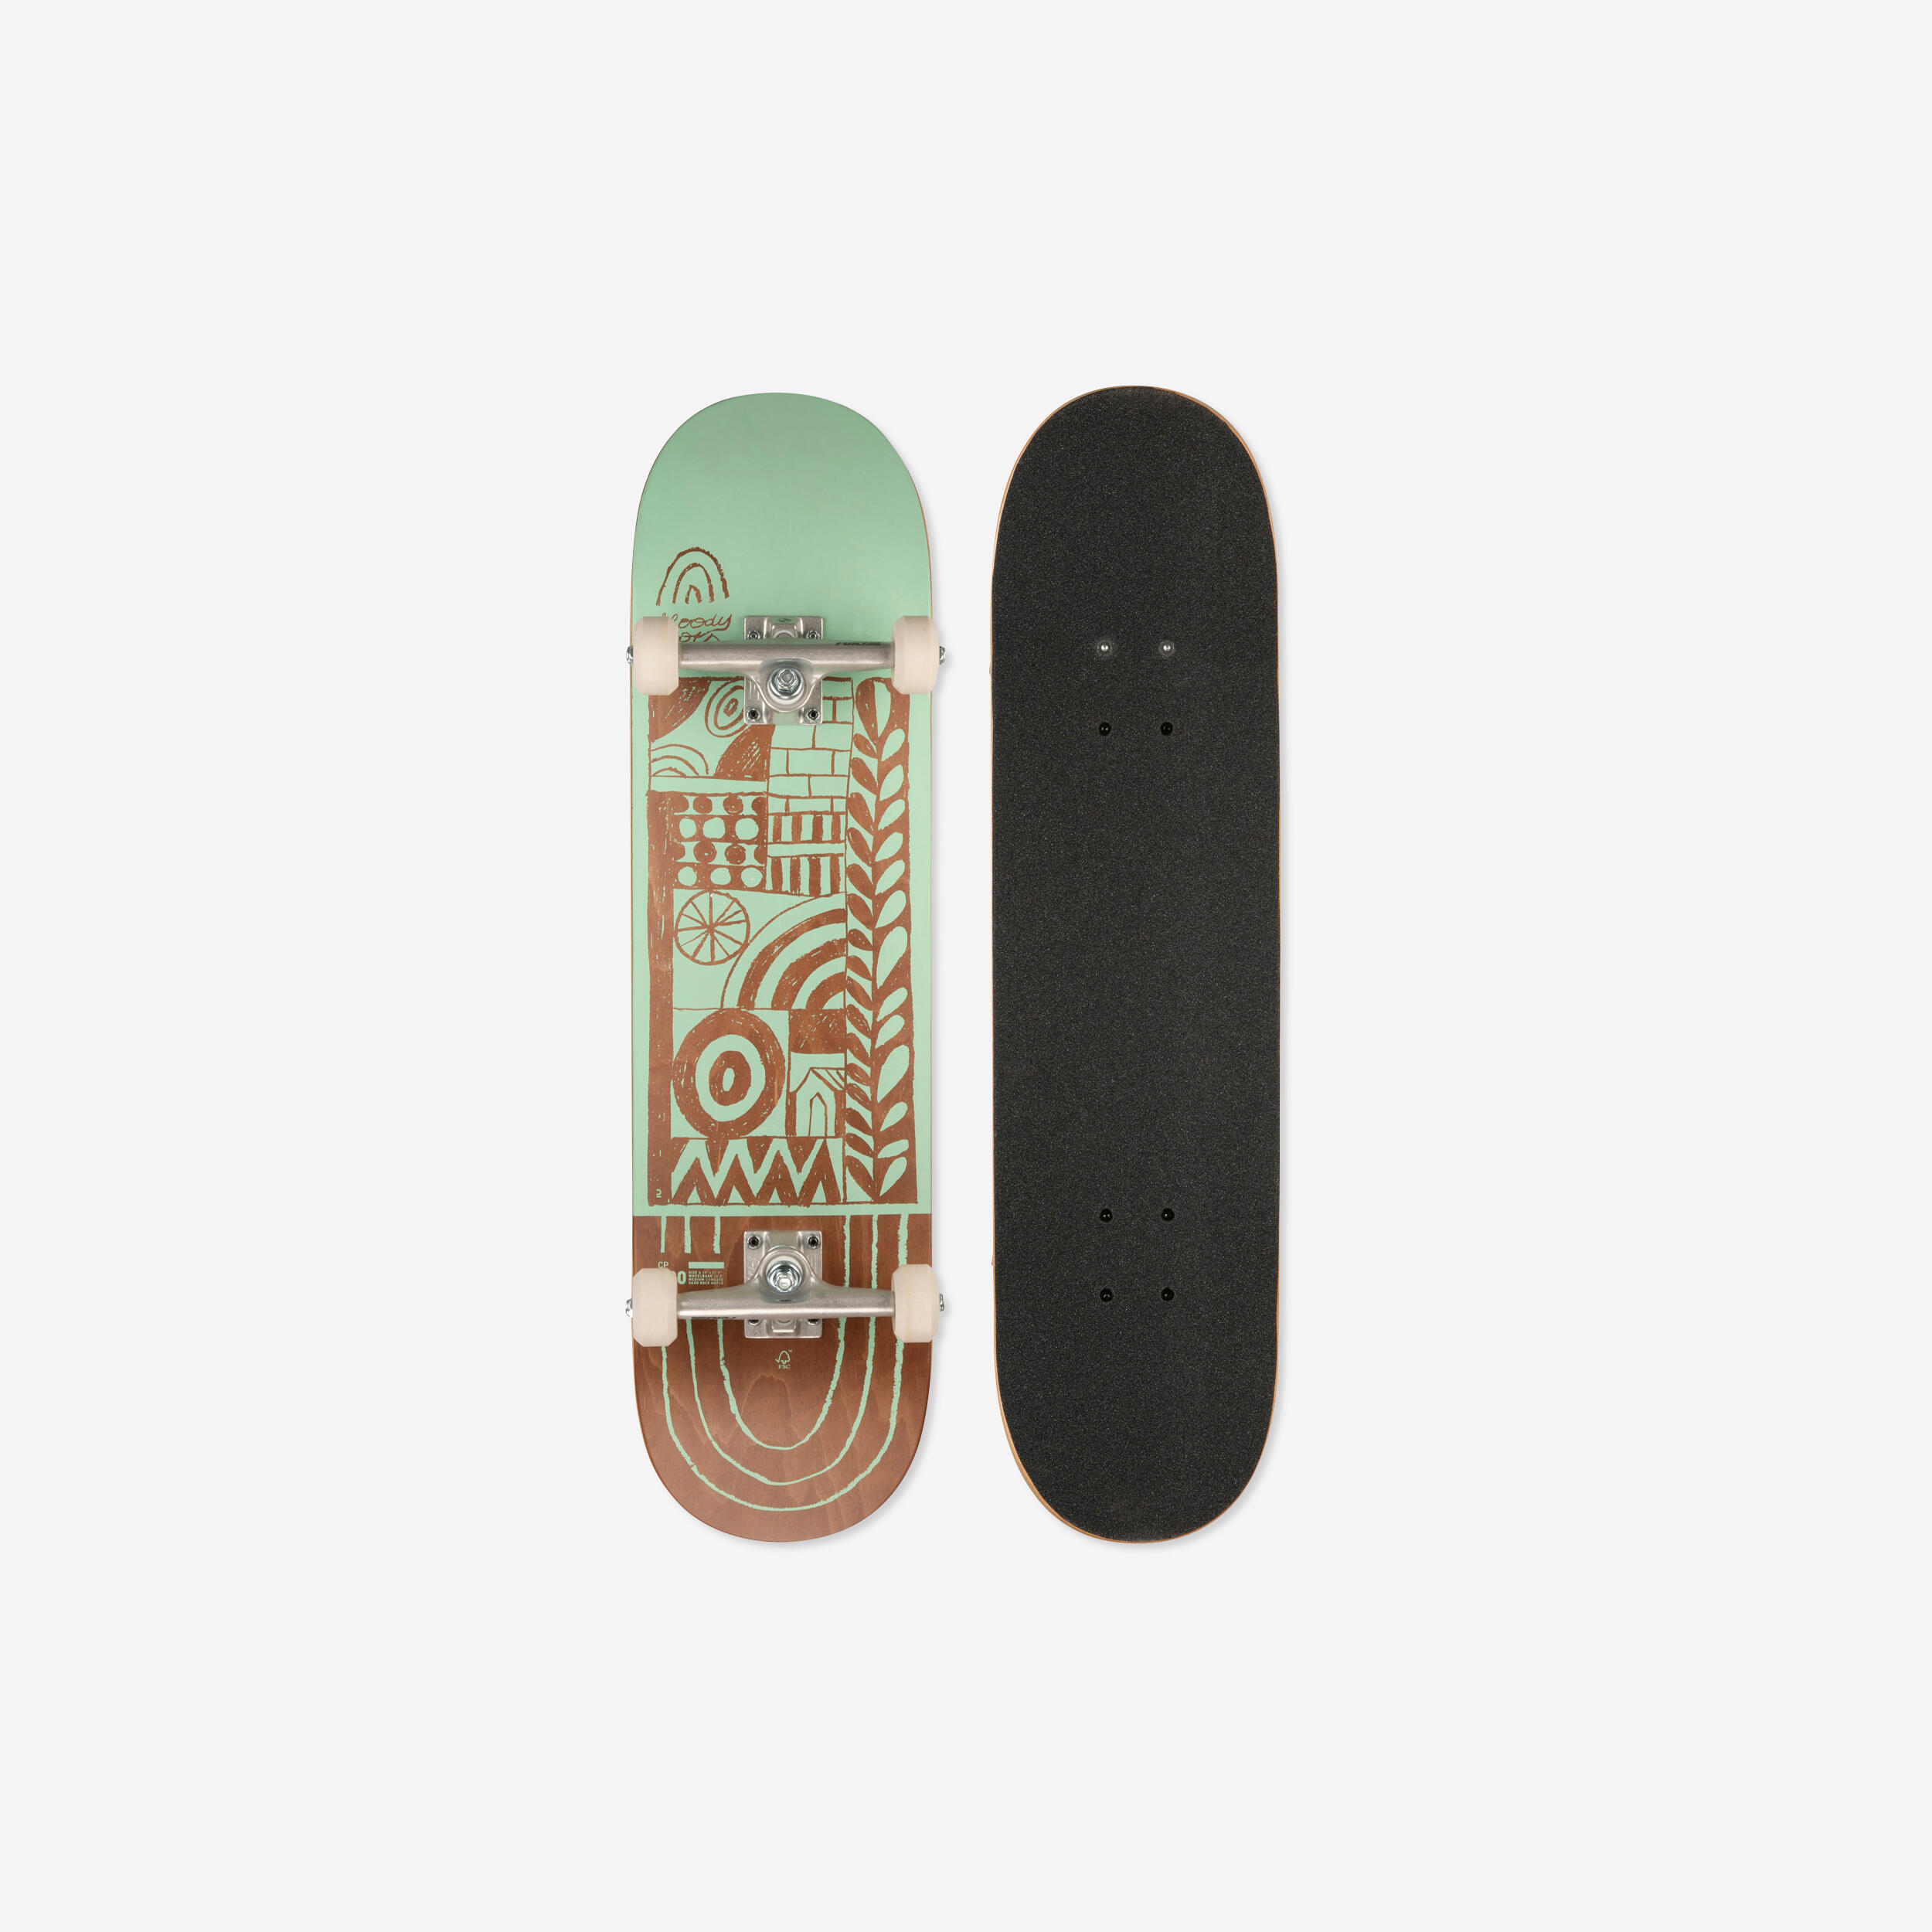 CP 500 skateboard